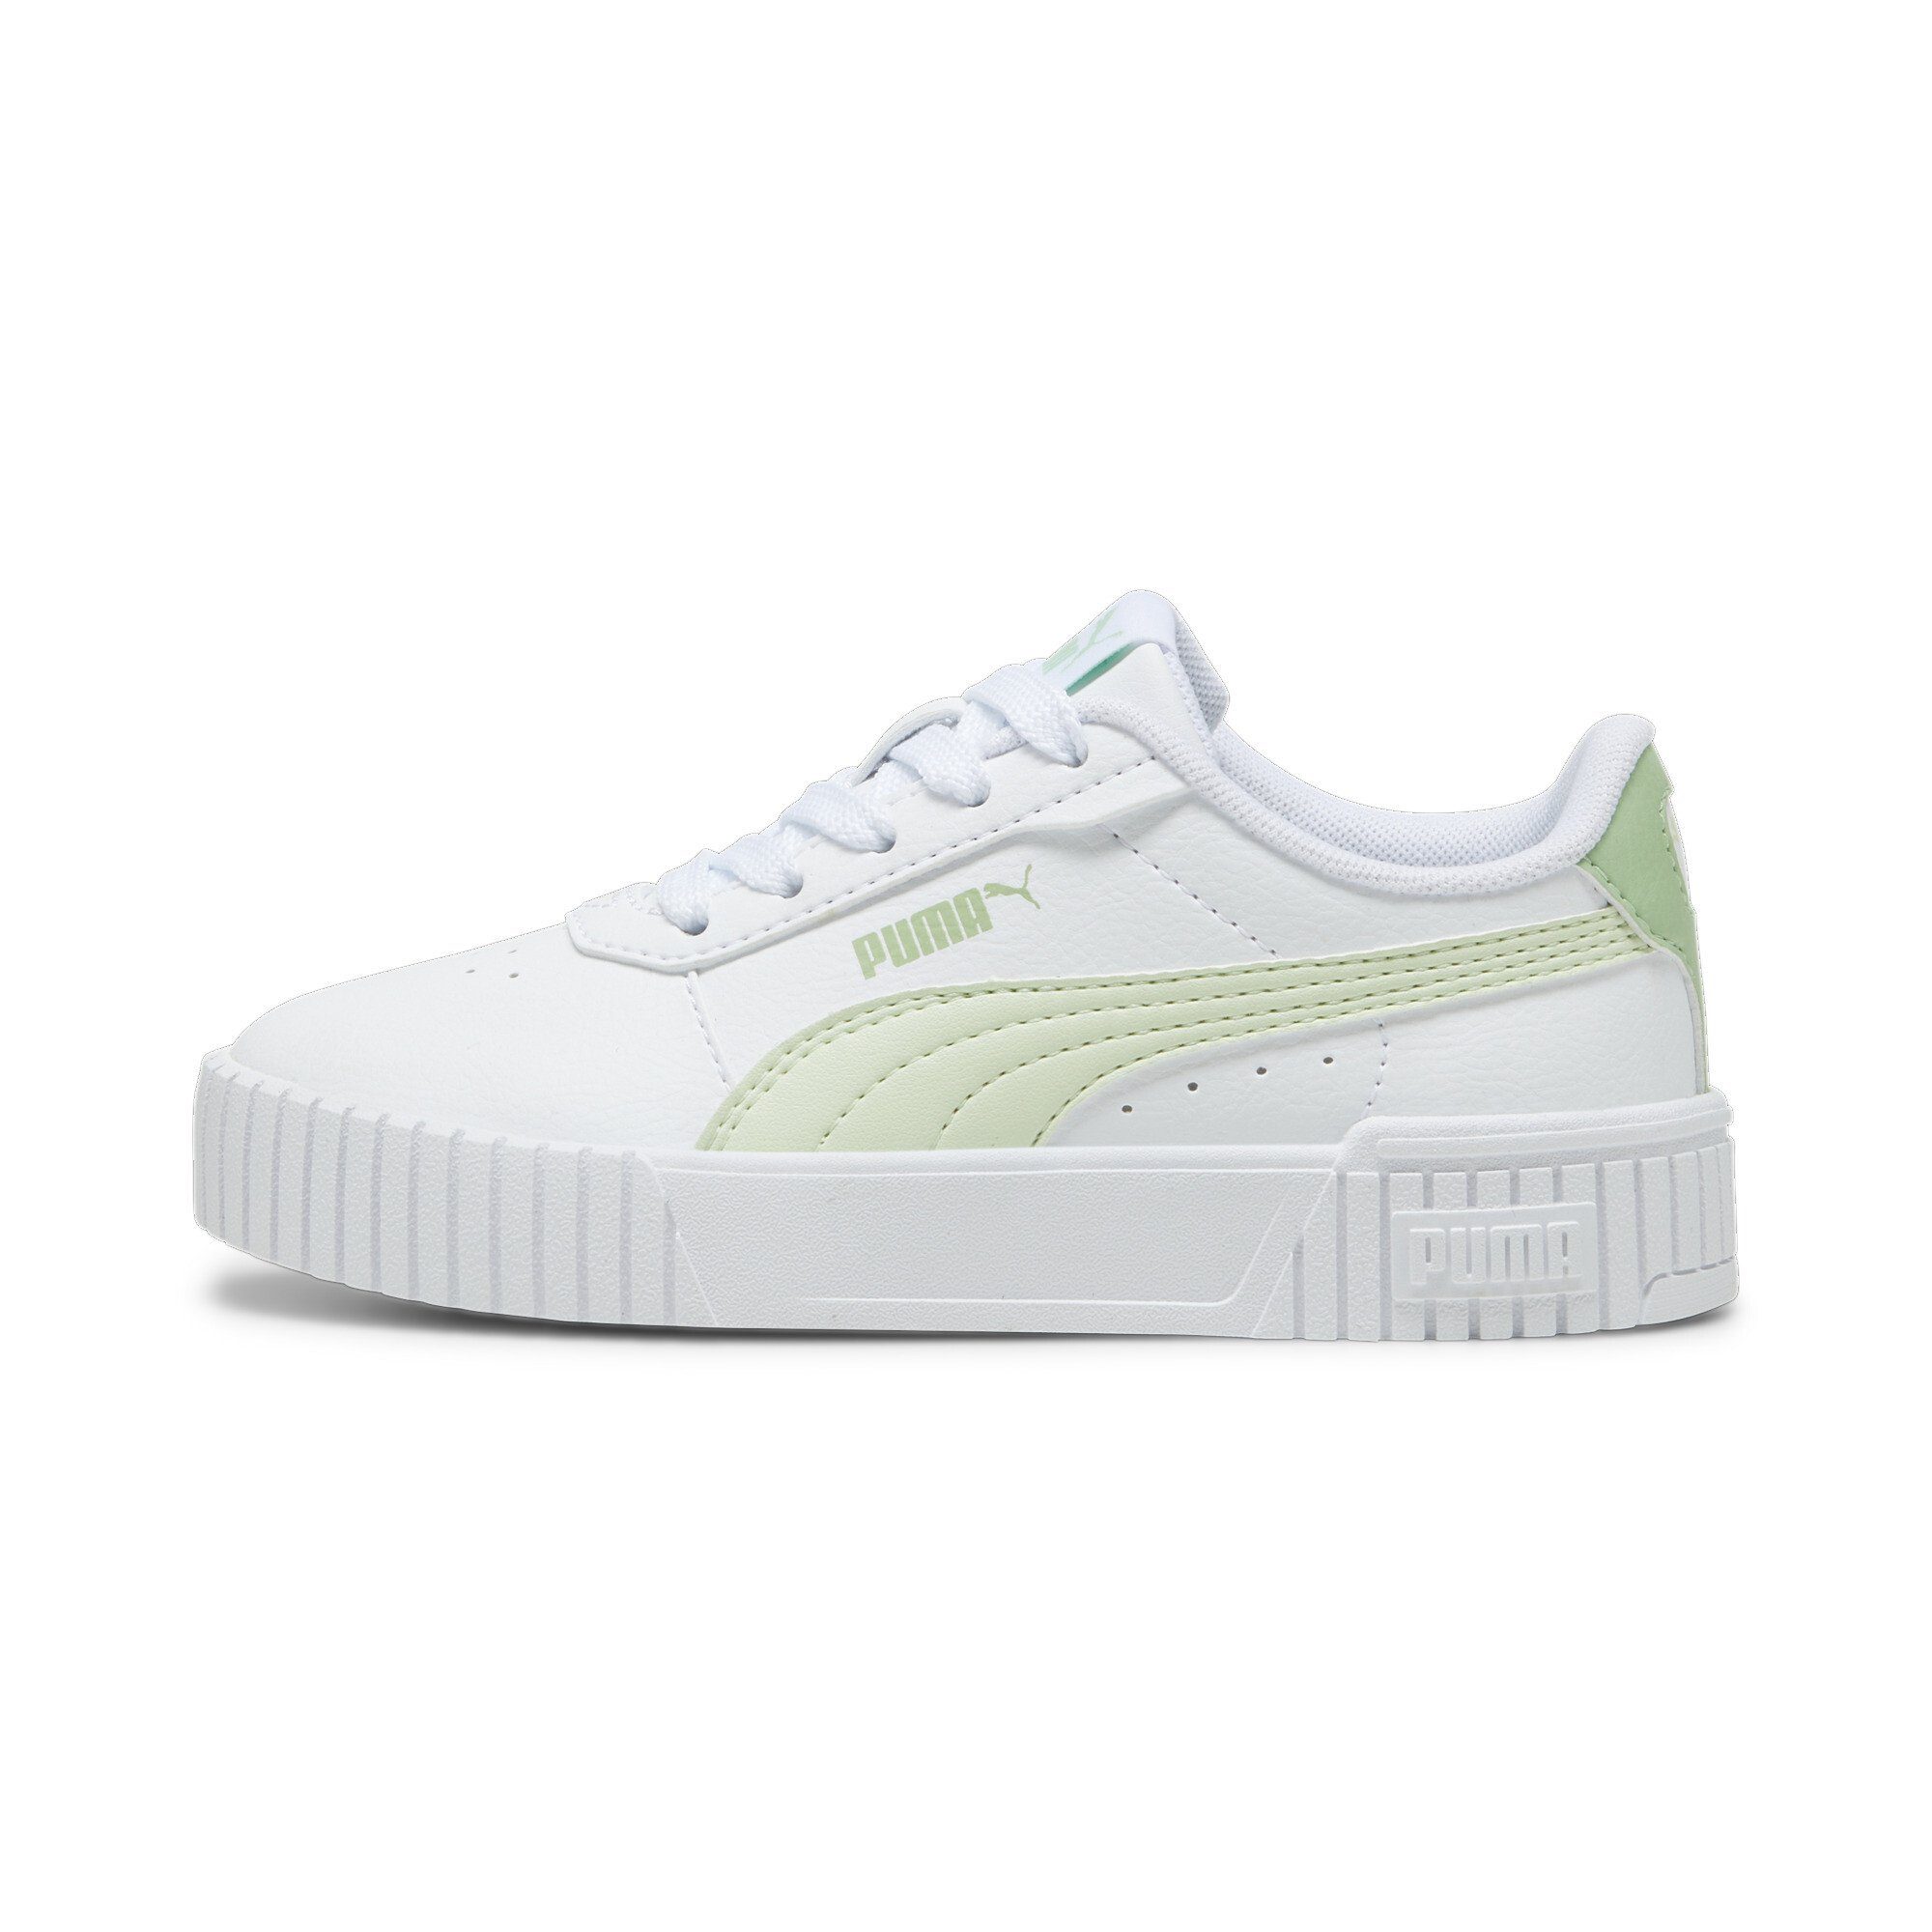 Carina Jugendliche Illusion 2.0 PUMA Pure Sneaker White Sneakers Green